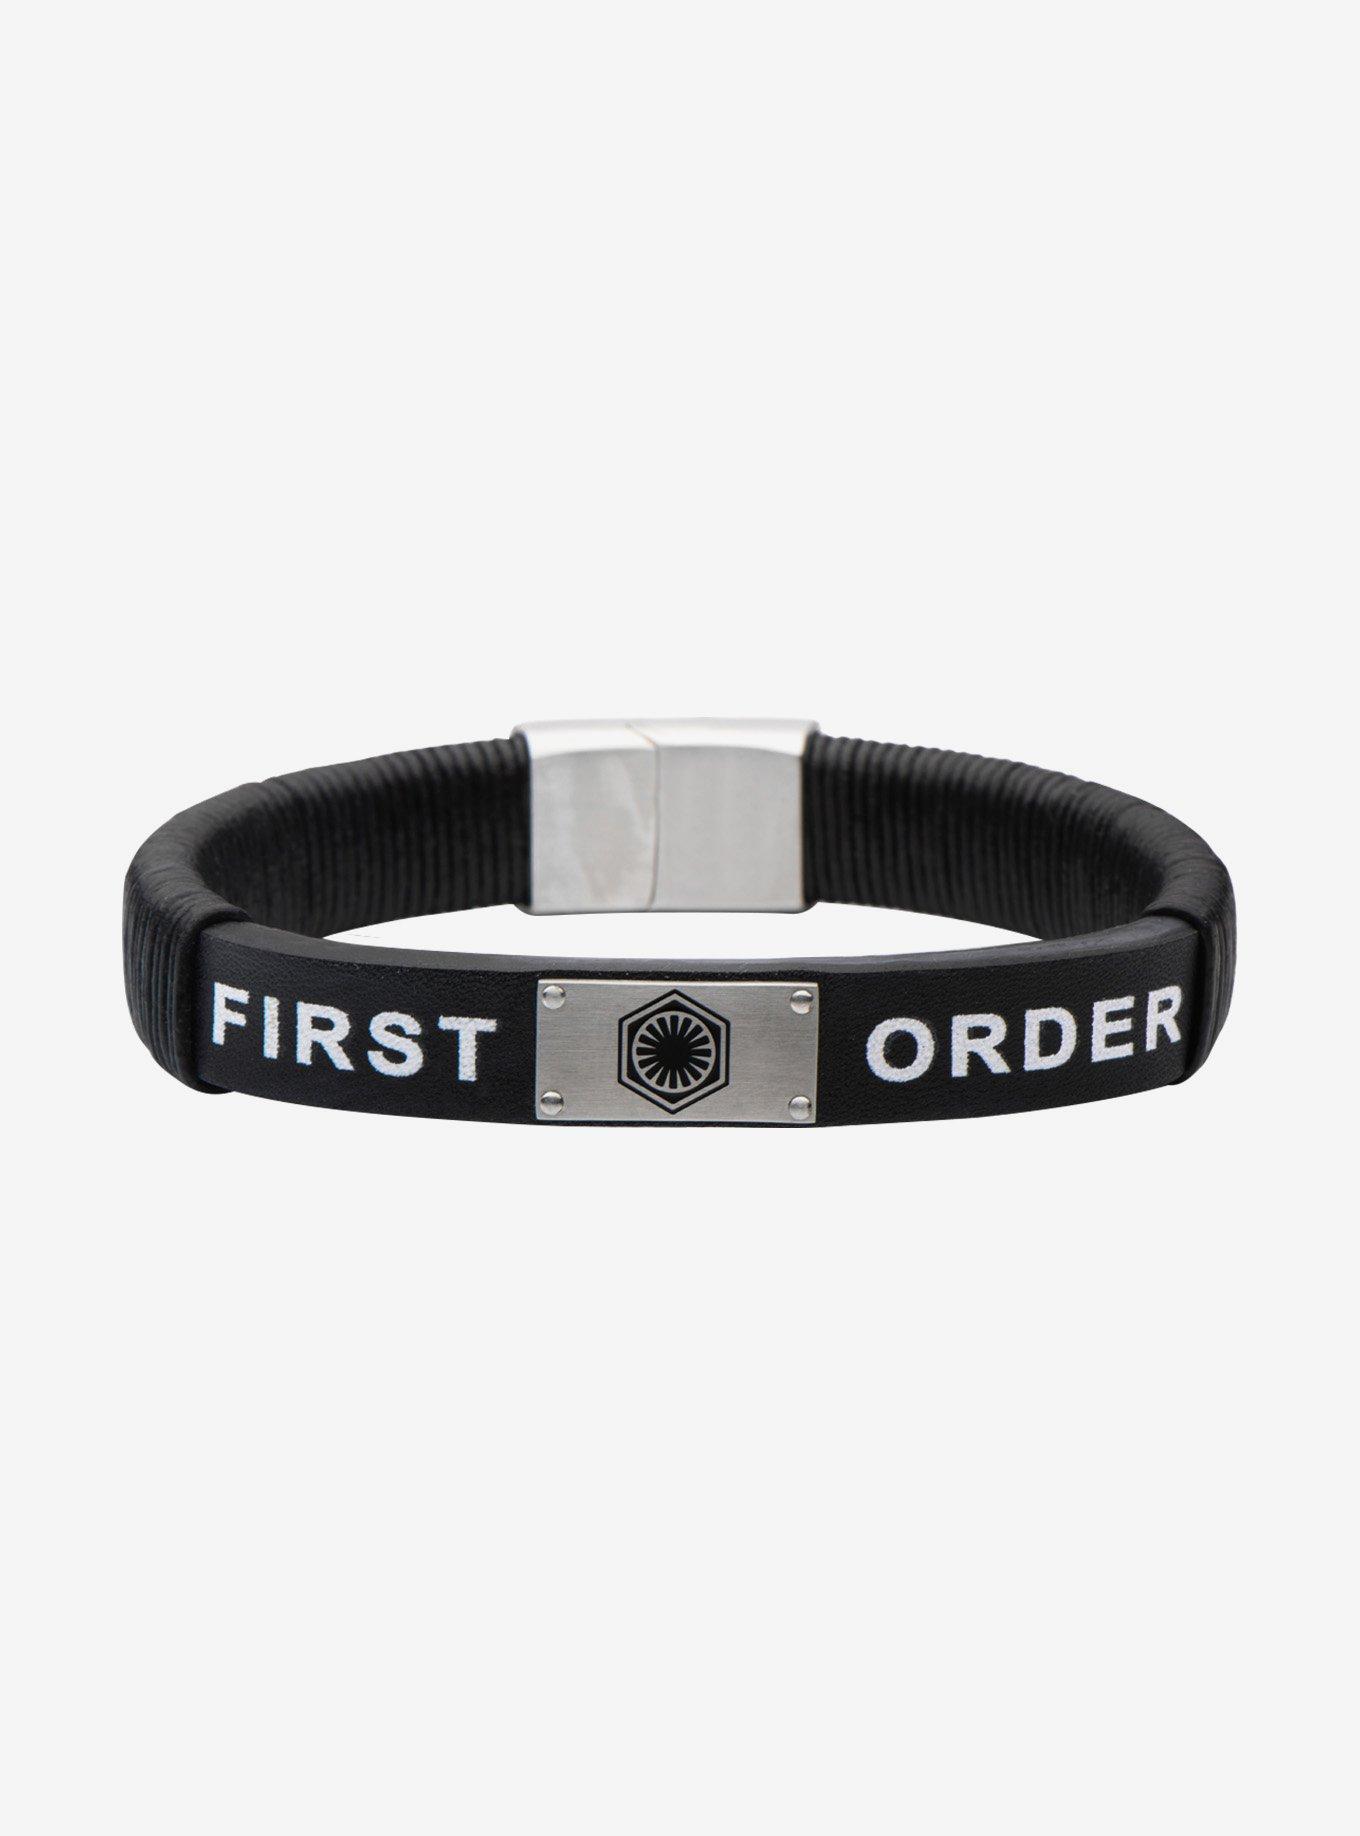 Star Wars Episode VII: The Force Awakens First Order Logo Leather Bracelet